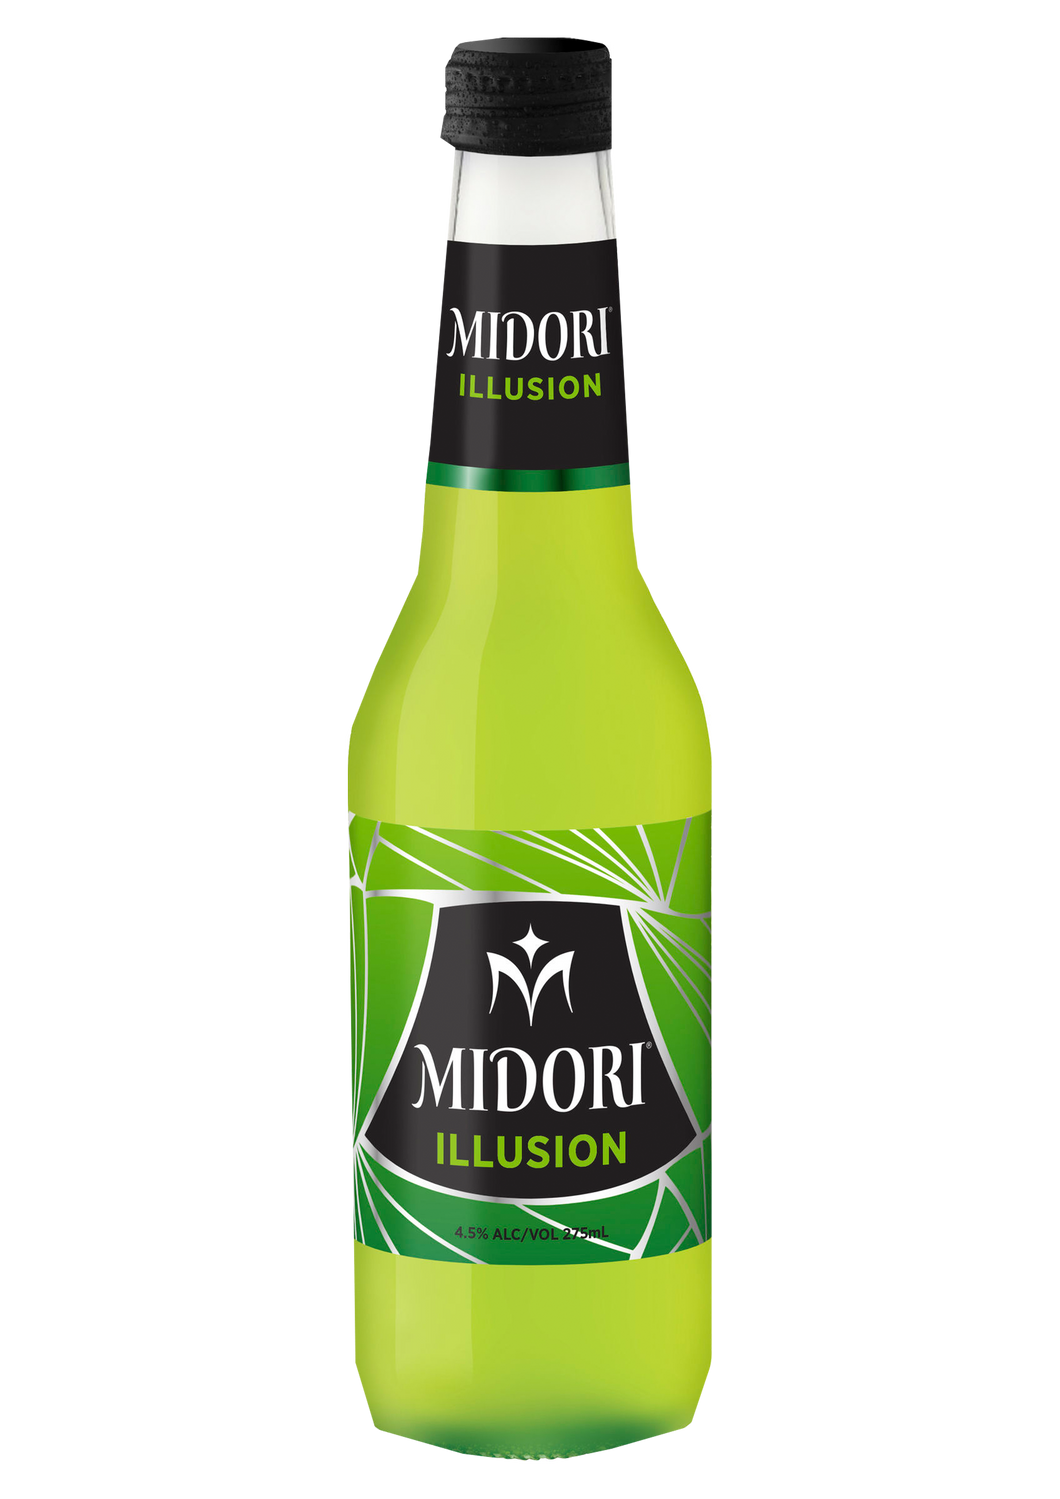 Midori illusion bottles